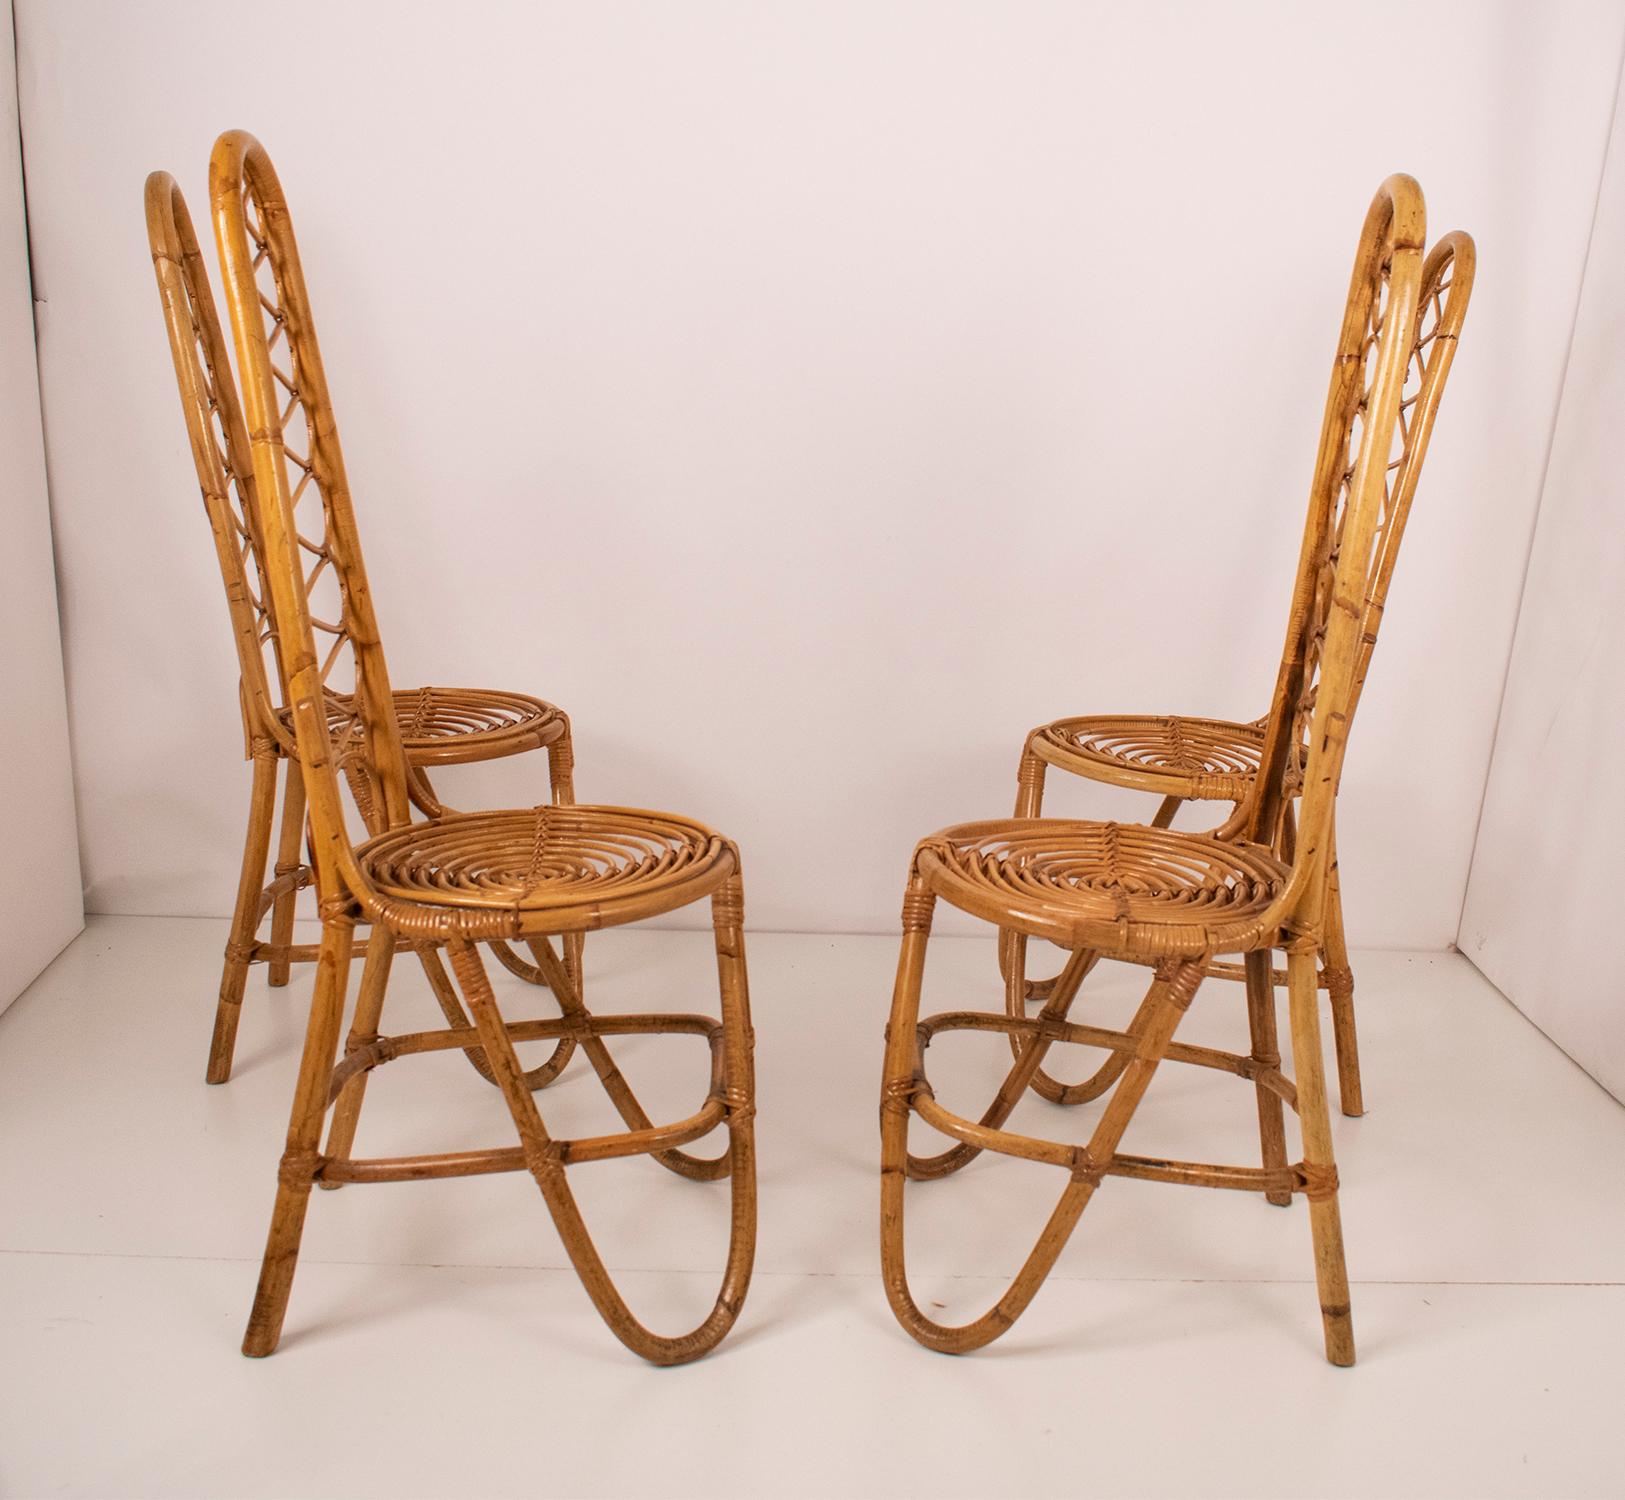 Dutch Bamboo Chairs by Dirk Van Sliedrecht for Rohe Noordwolde, 1950